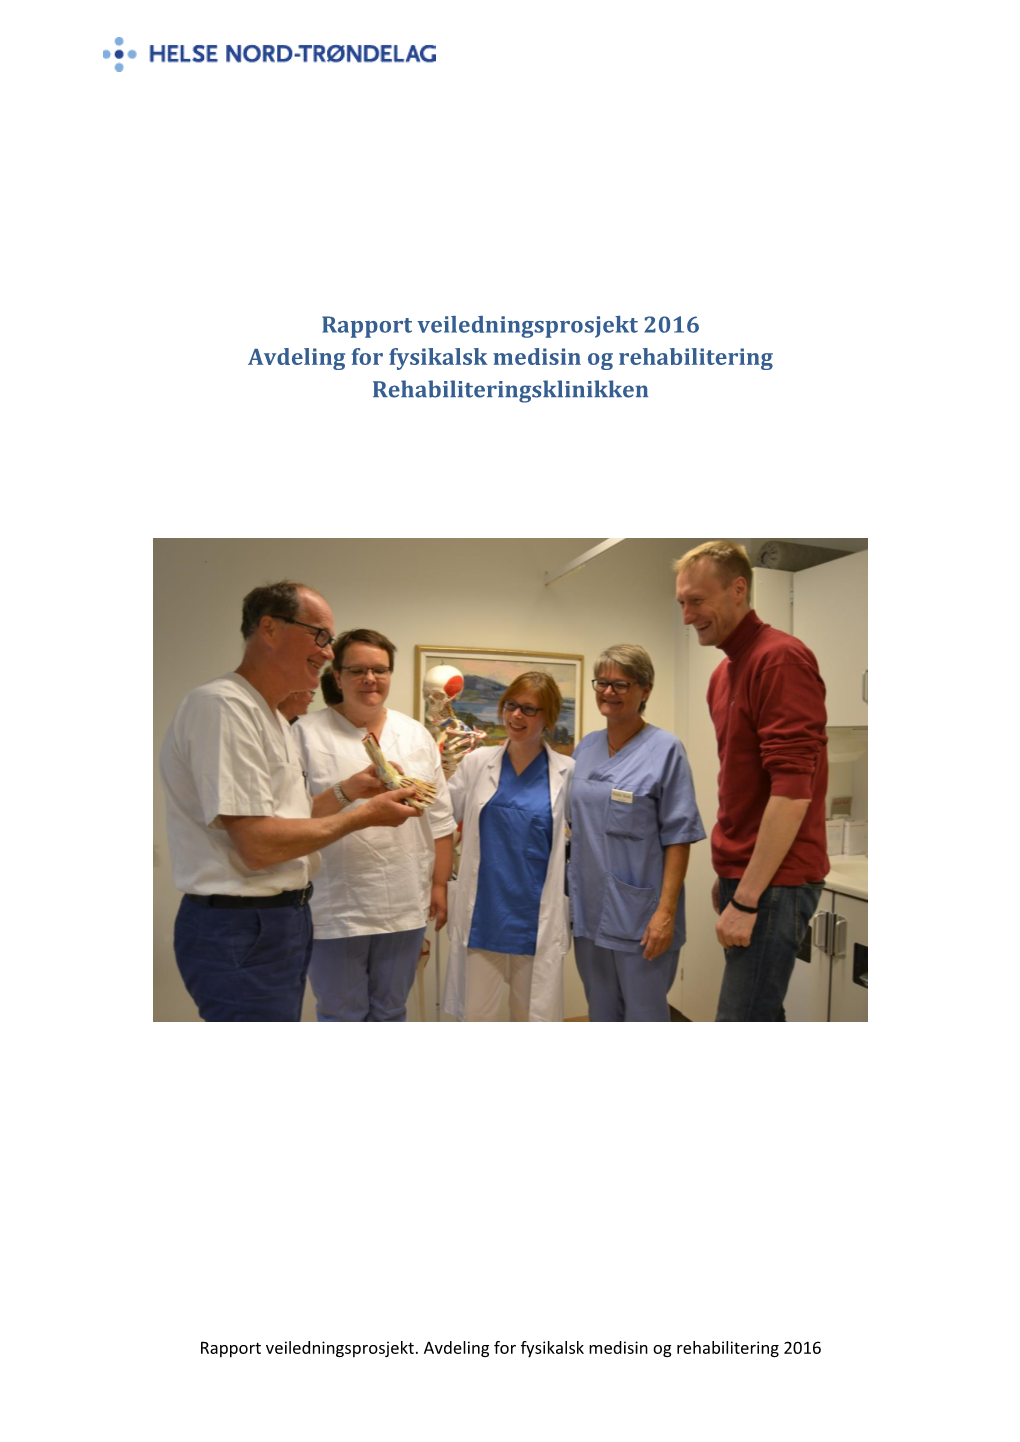 Rapport Veiledningsprosjekt 2016 Avdeling for Fysikalsk Medisin Og Rehabilitering Rehabiliteringsklinikken